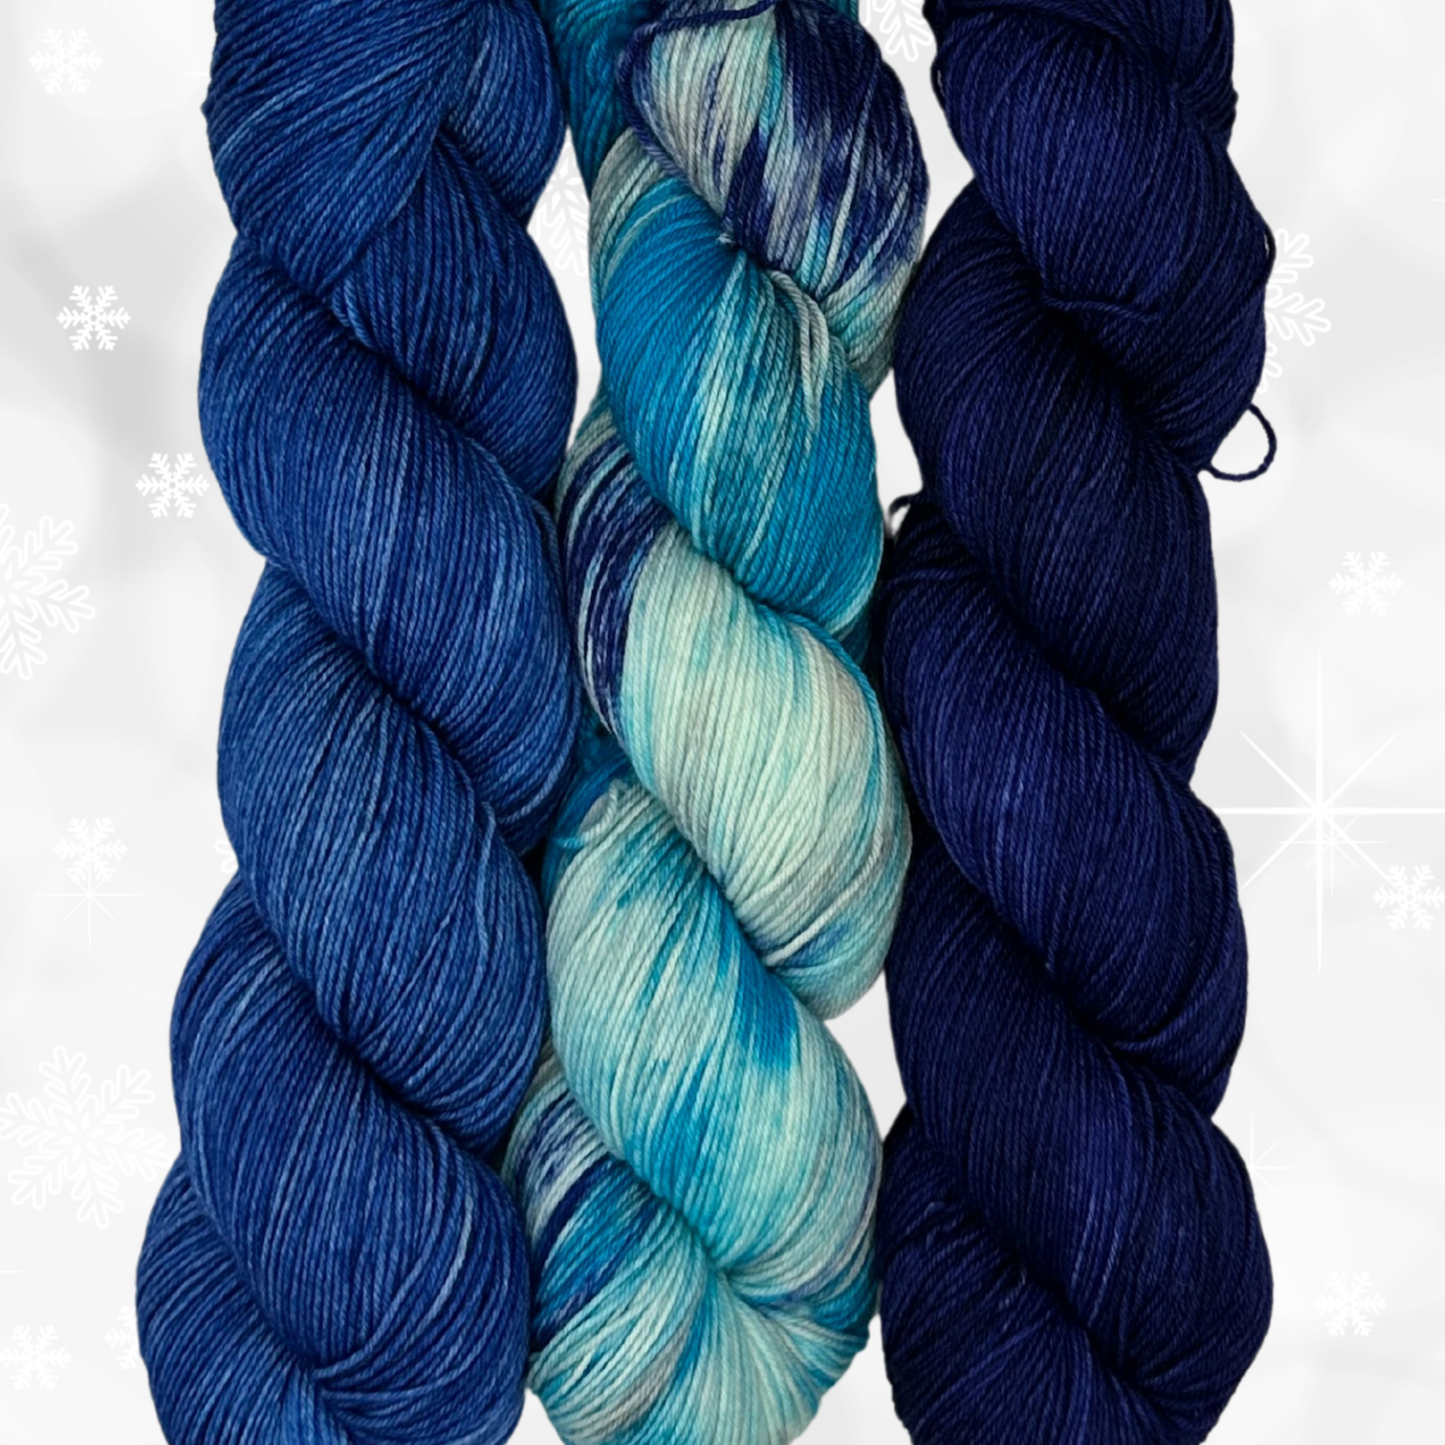 3 Skein Yarn Bundle - Winter Wonderland